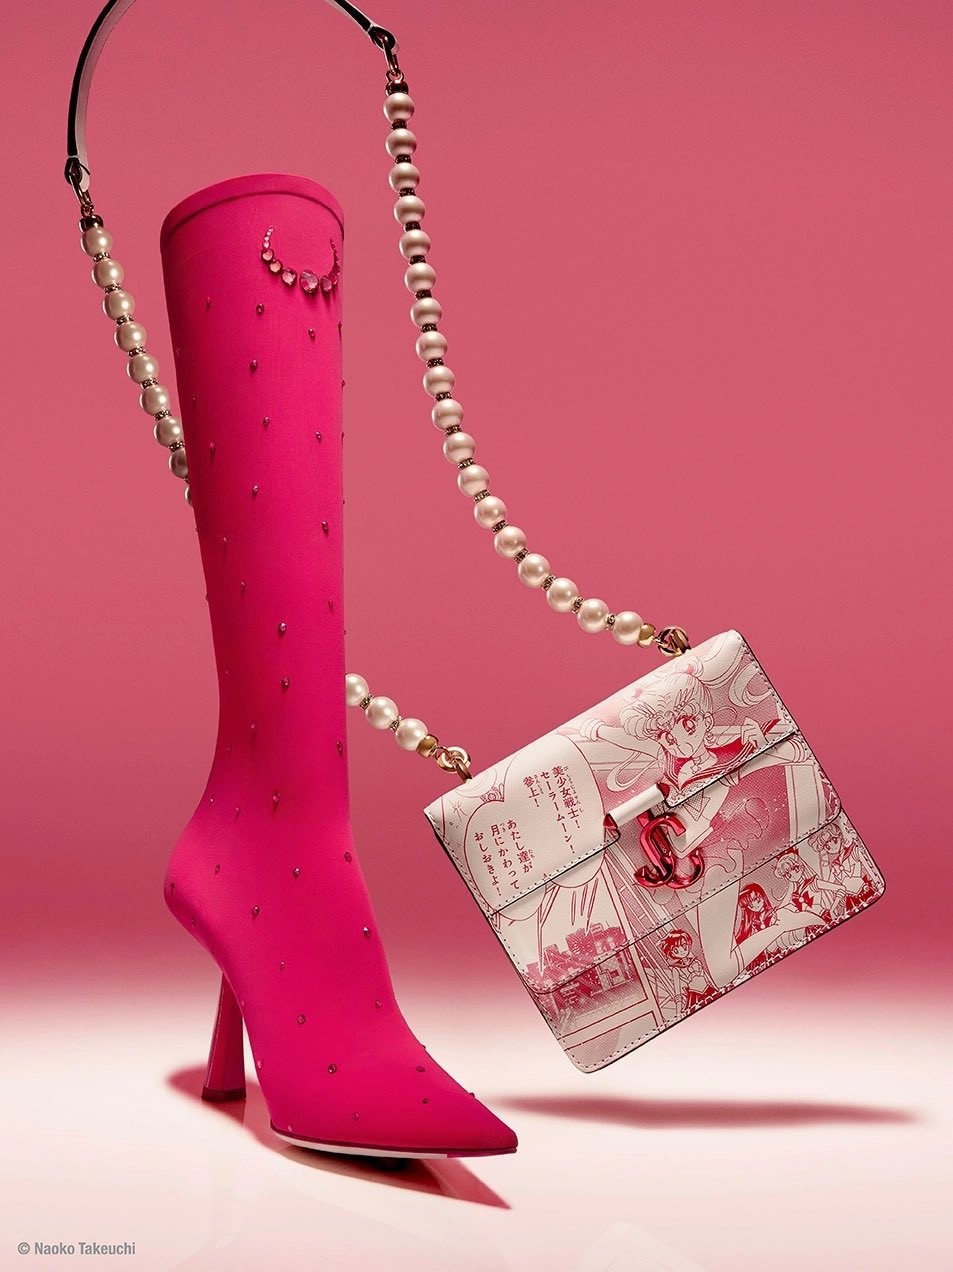 奢侈品牌聯動《美少女戰士》 推出萬元情人節高跟鞋